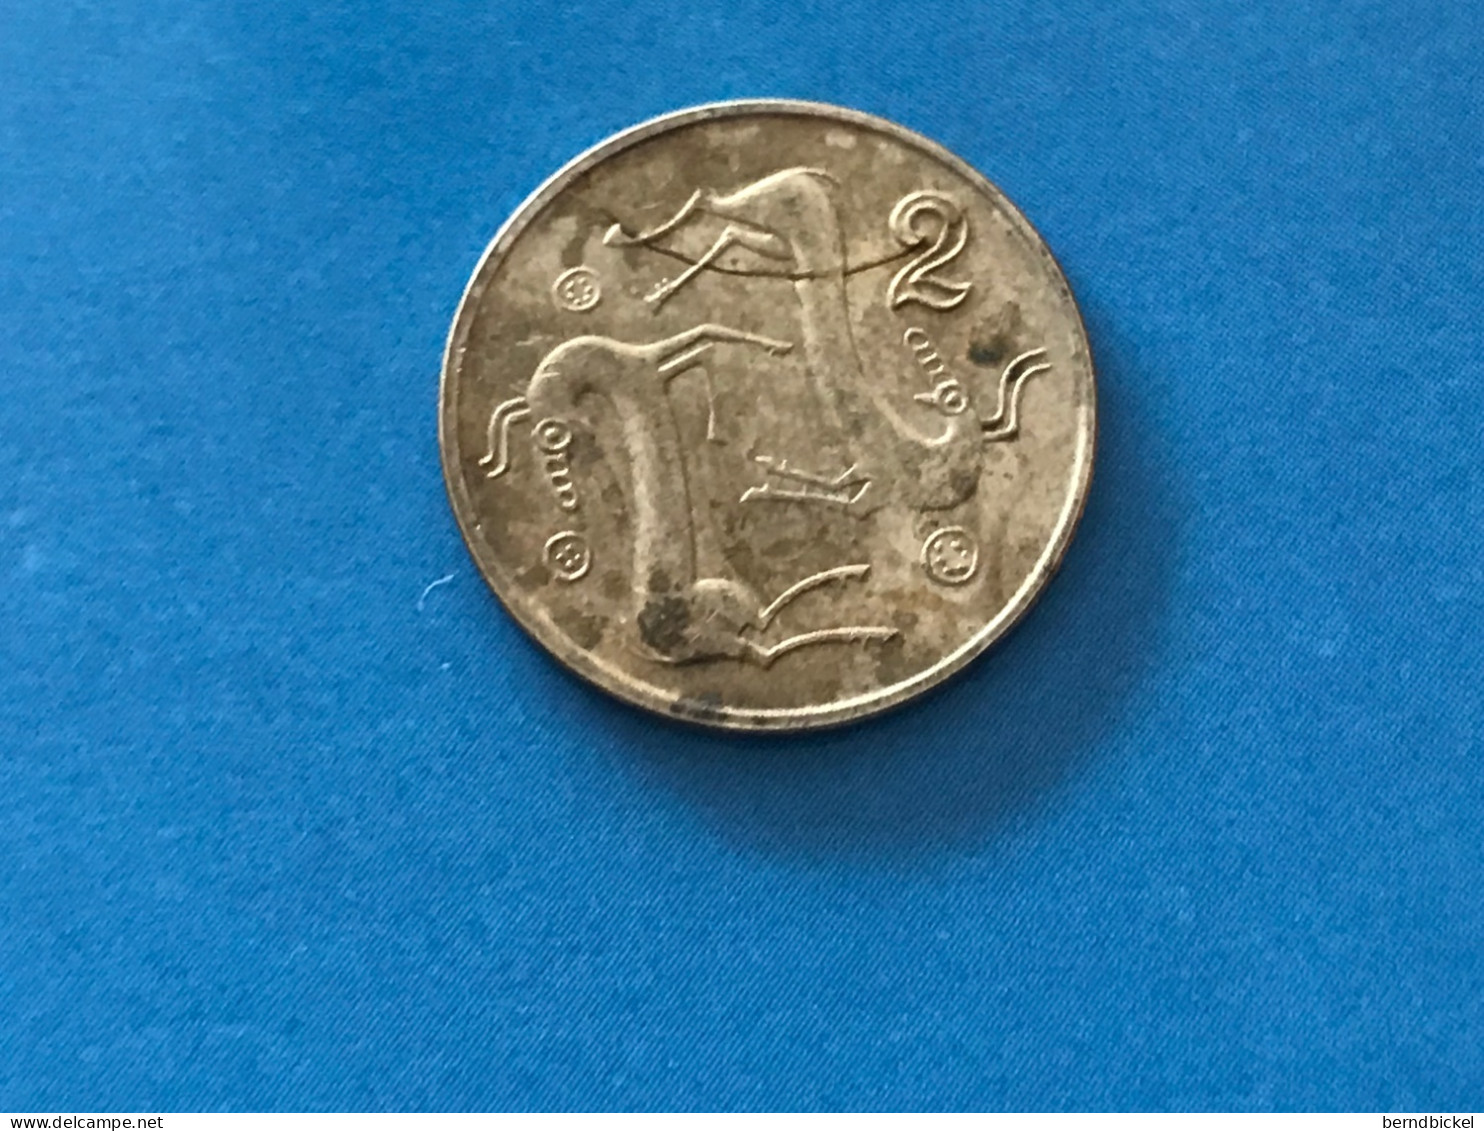 Münze Münzen Umlaufmünze Zypern 2 Cents 1992 - Zypern